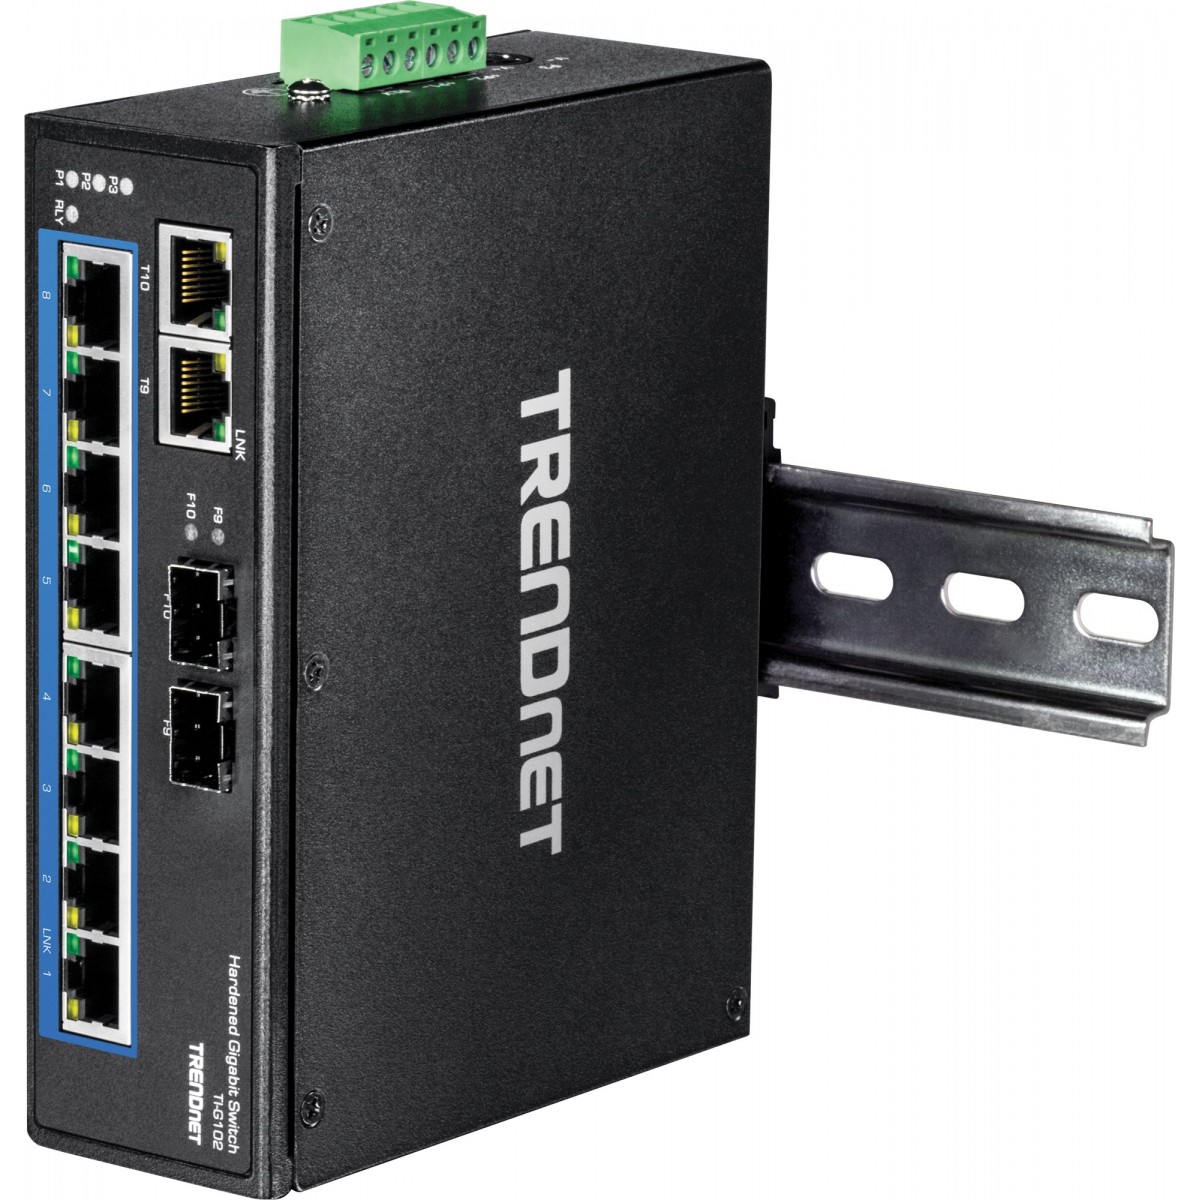 TRENDnet TI-G102 - Gigabit Ethernet (10/100/1000) - Full duplex - Wall mountable